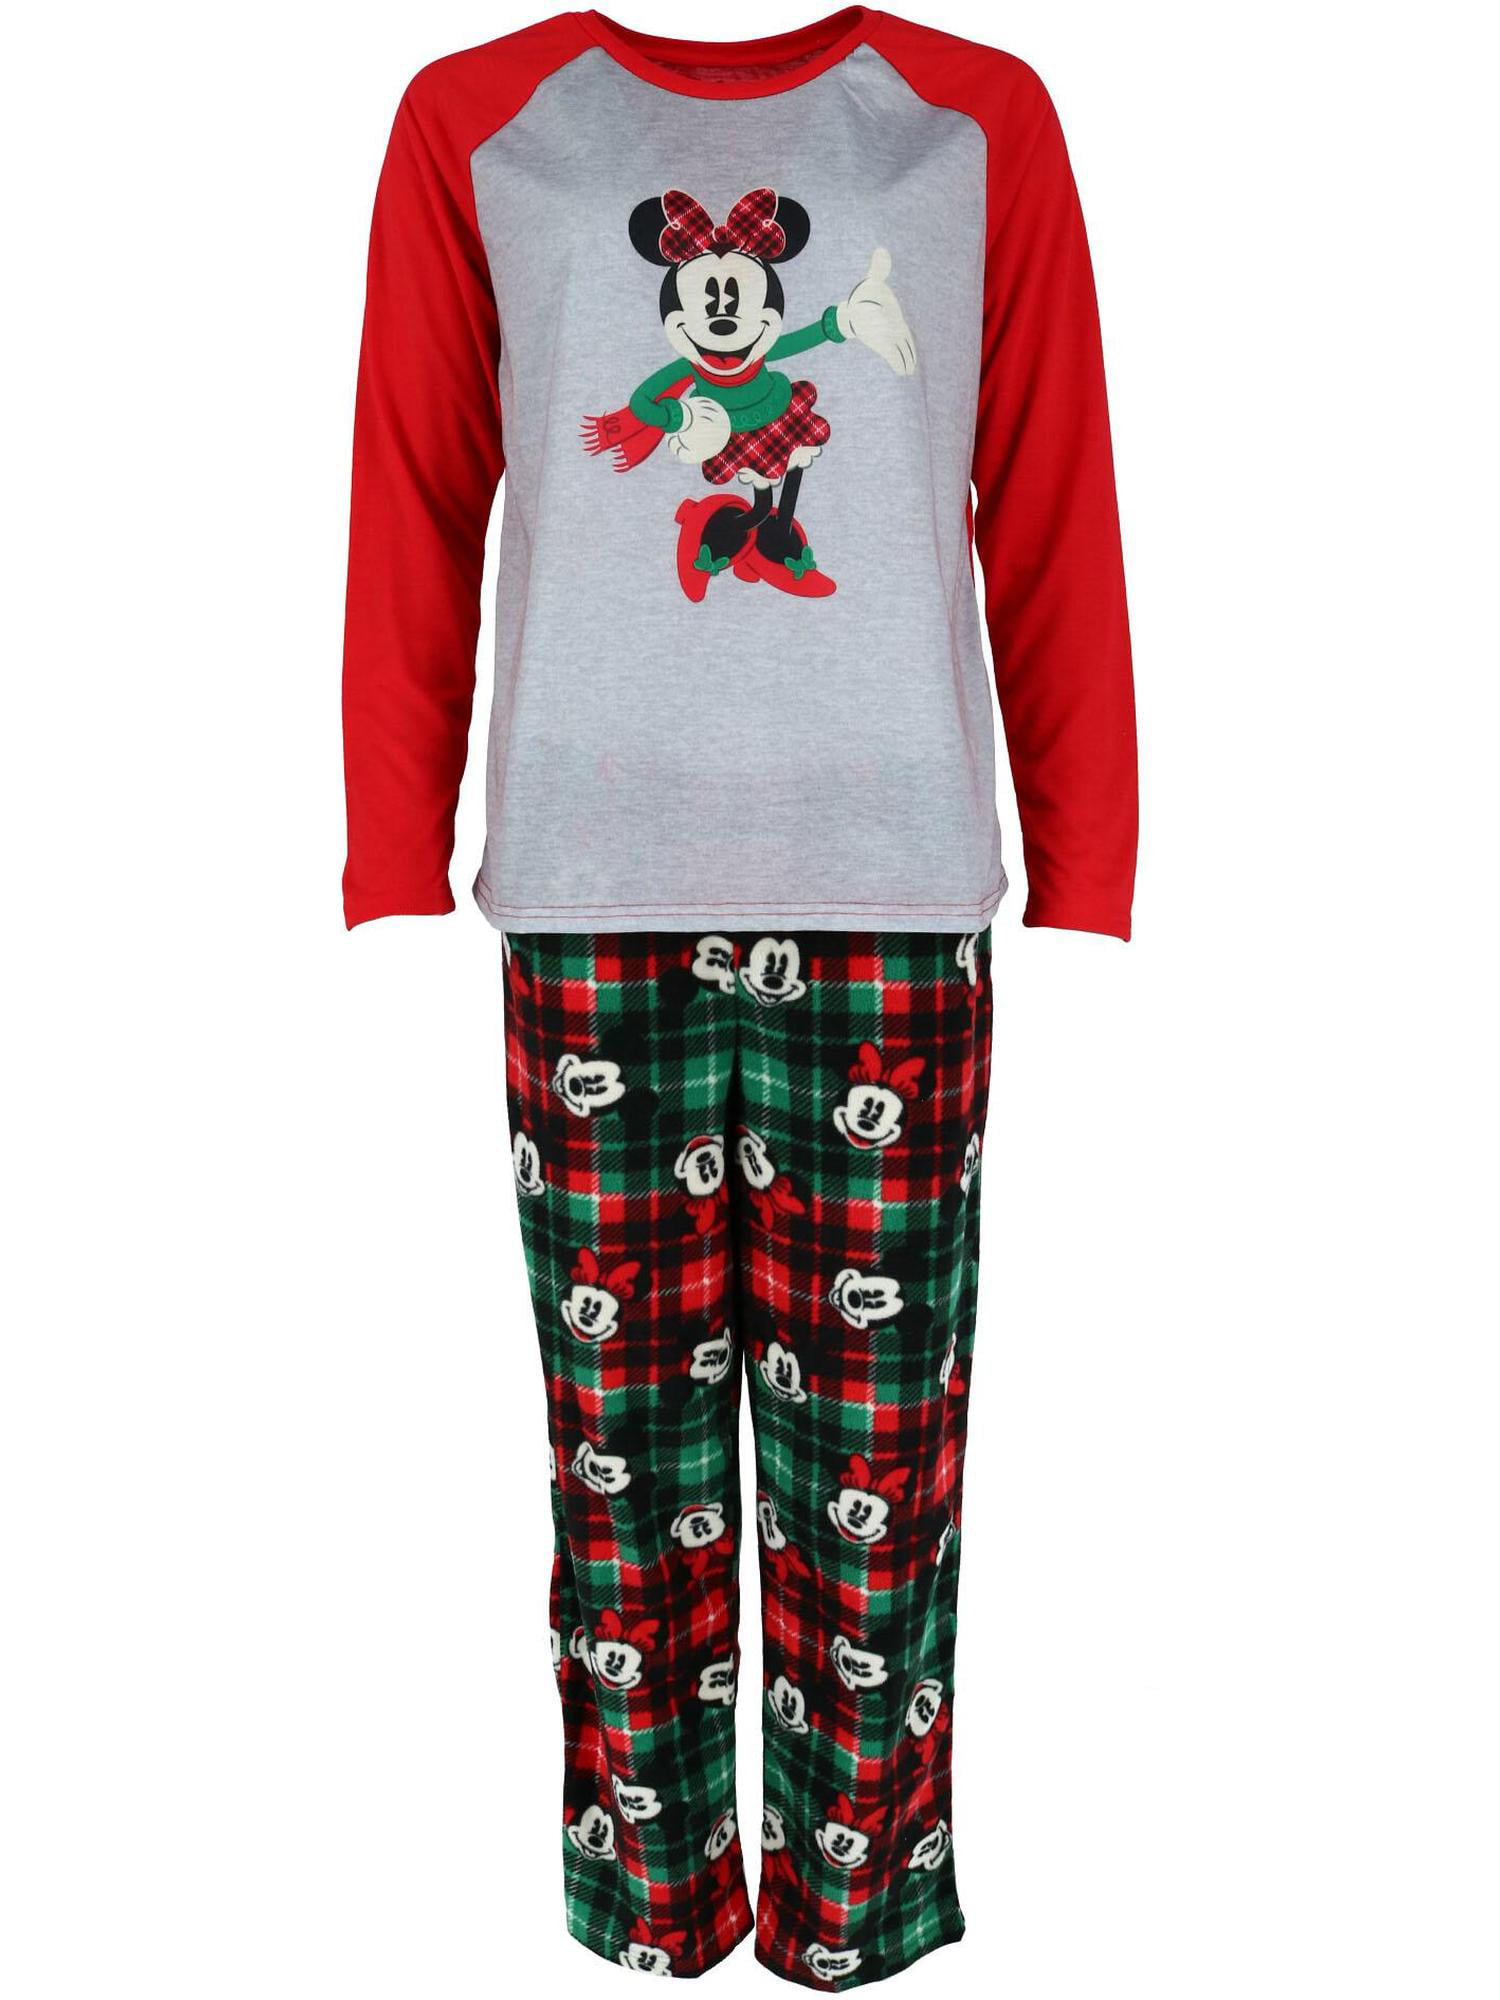 Disney Disney Matching Family Christmas Pajamas Women's